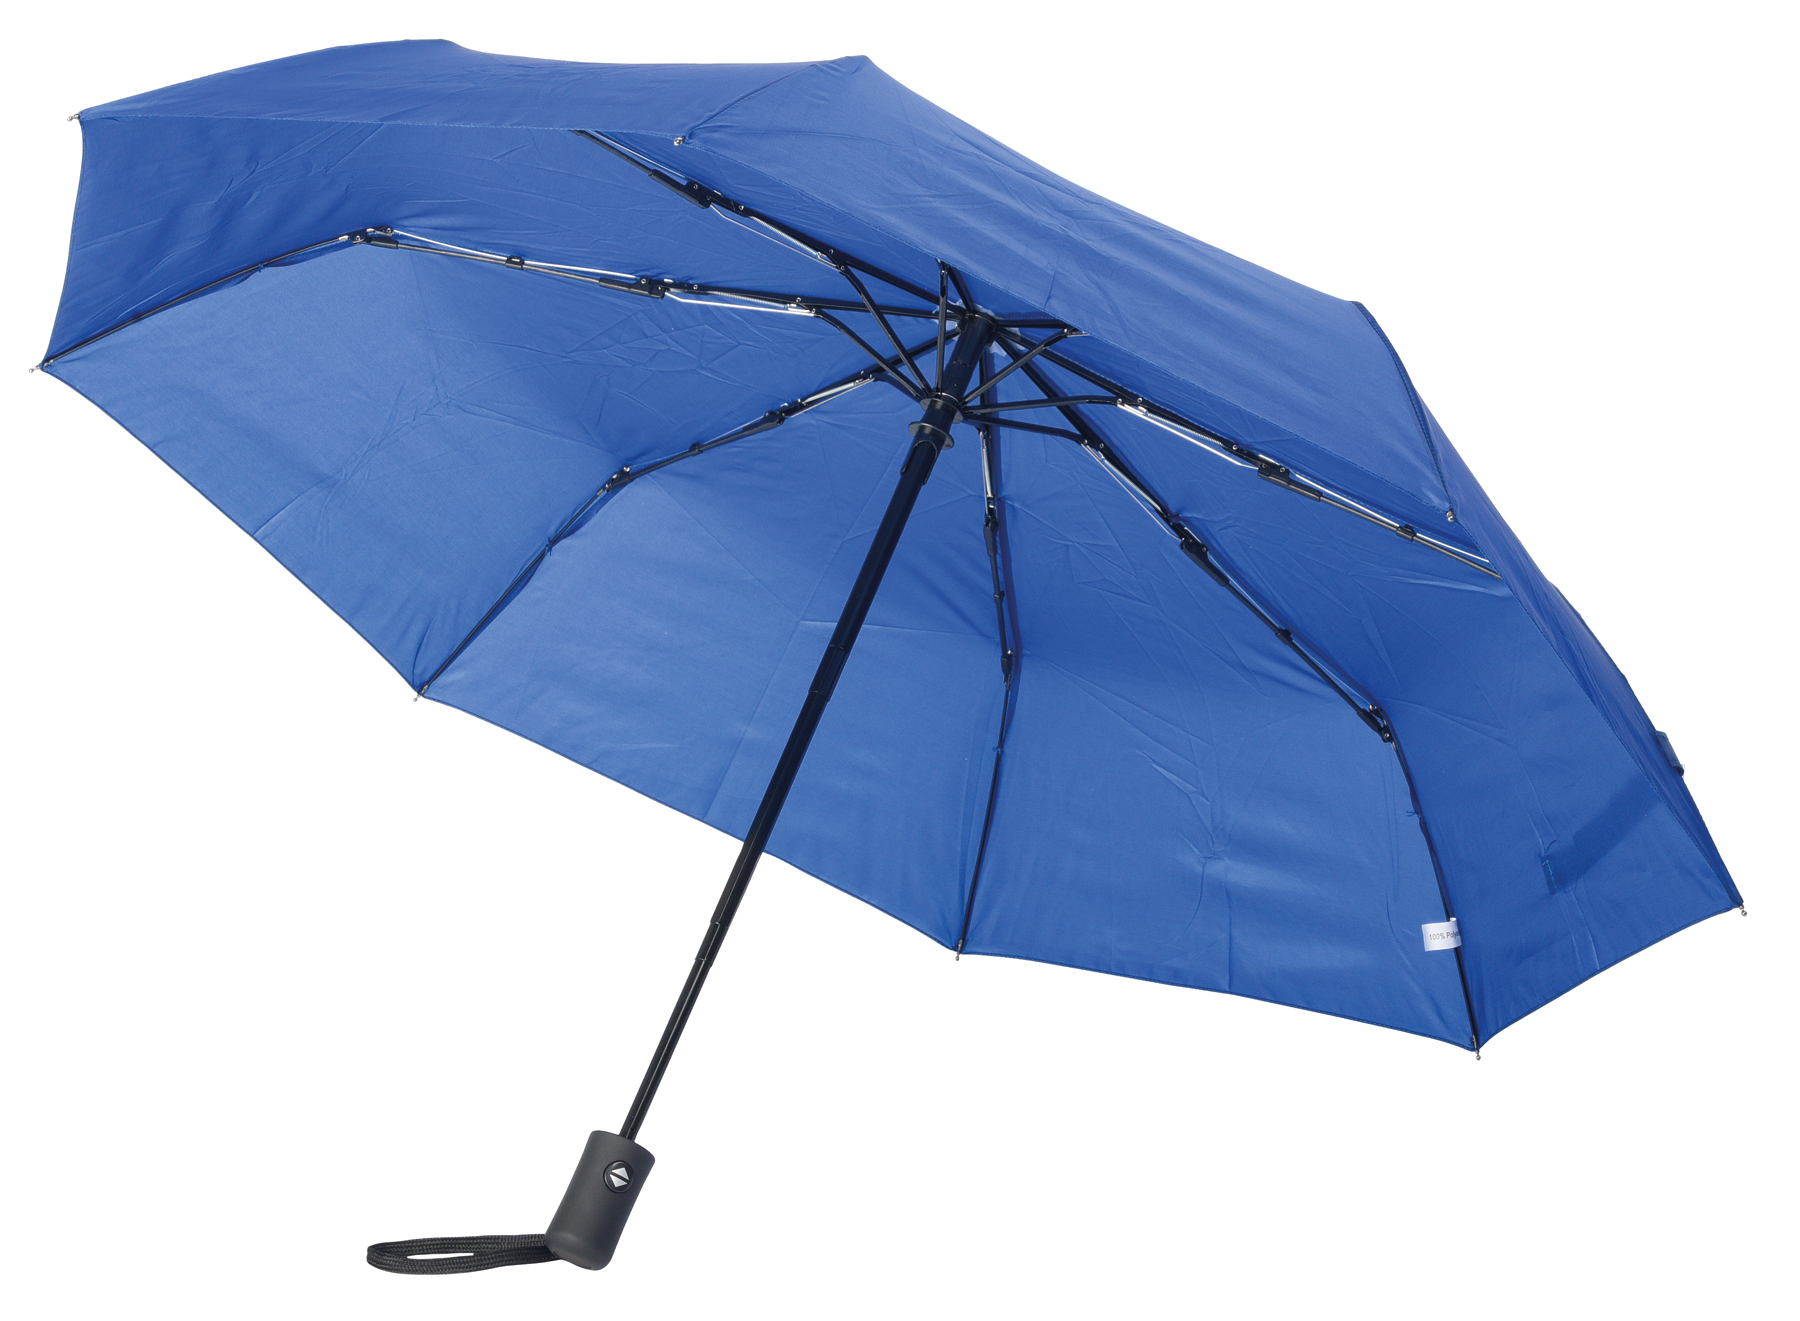 Automatic open-close windproof pocket umbrella PLOPP - blue